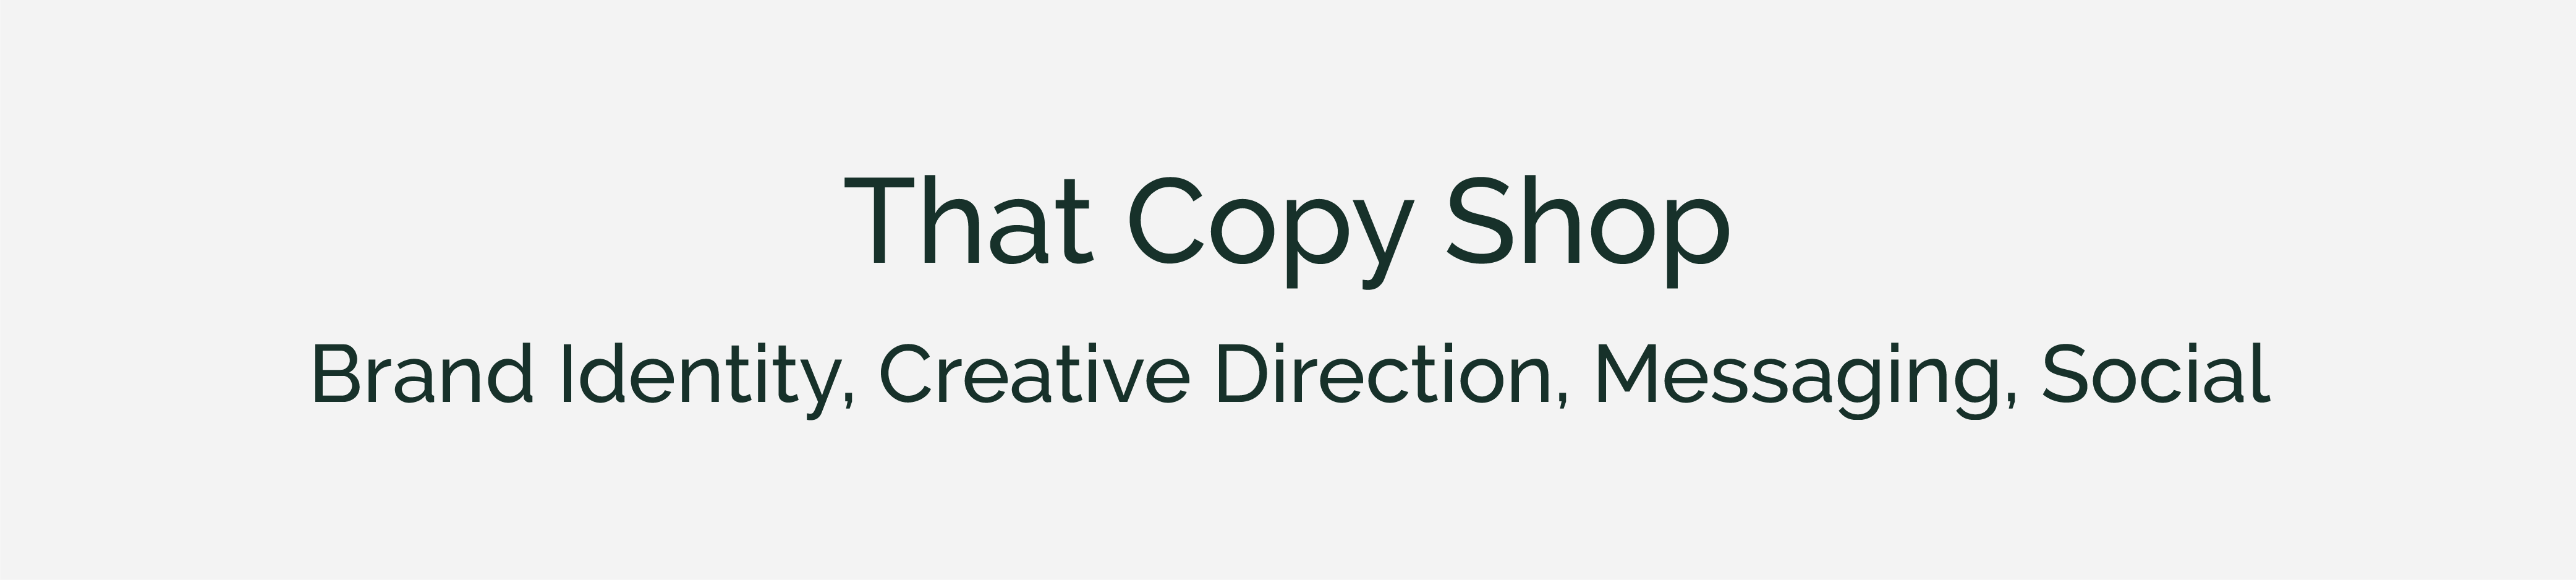 That Copy Shop case study